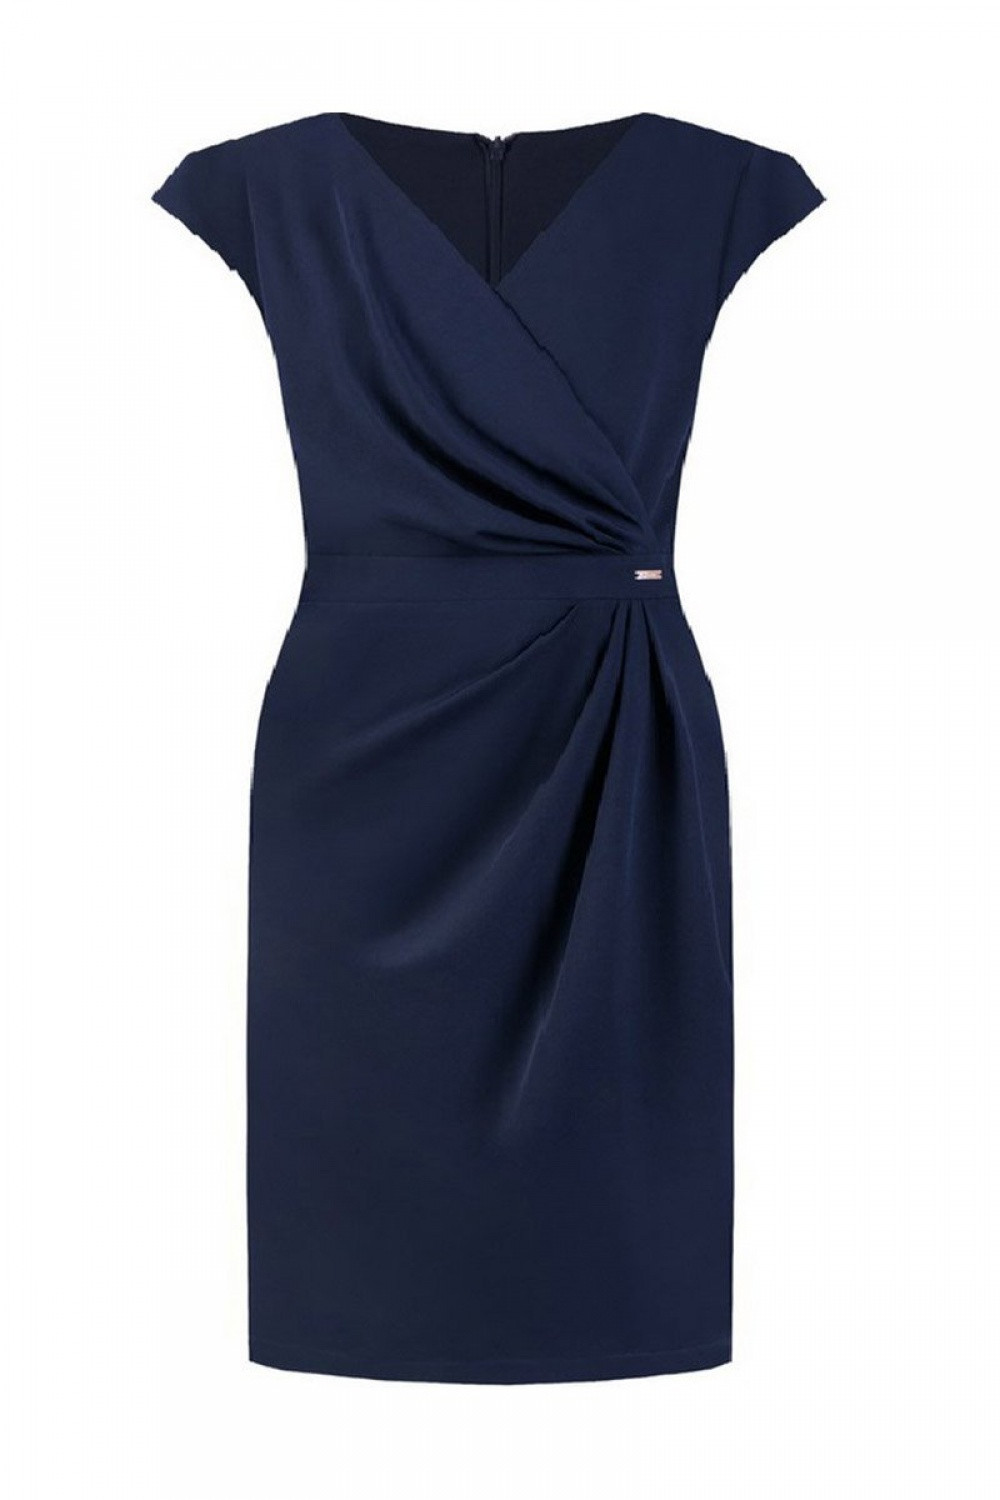 Dámské šaty Oktavia model 108514 Tmavě modrá - Jersa tmavě modrá 36